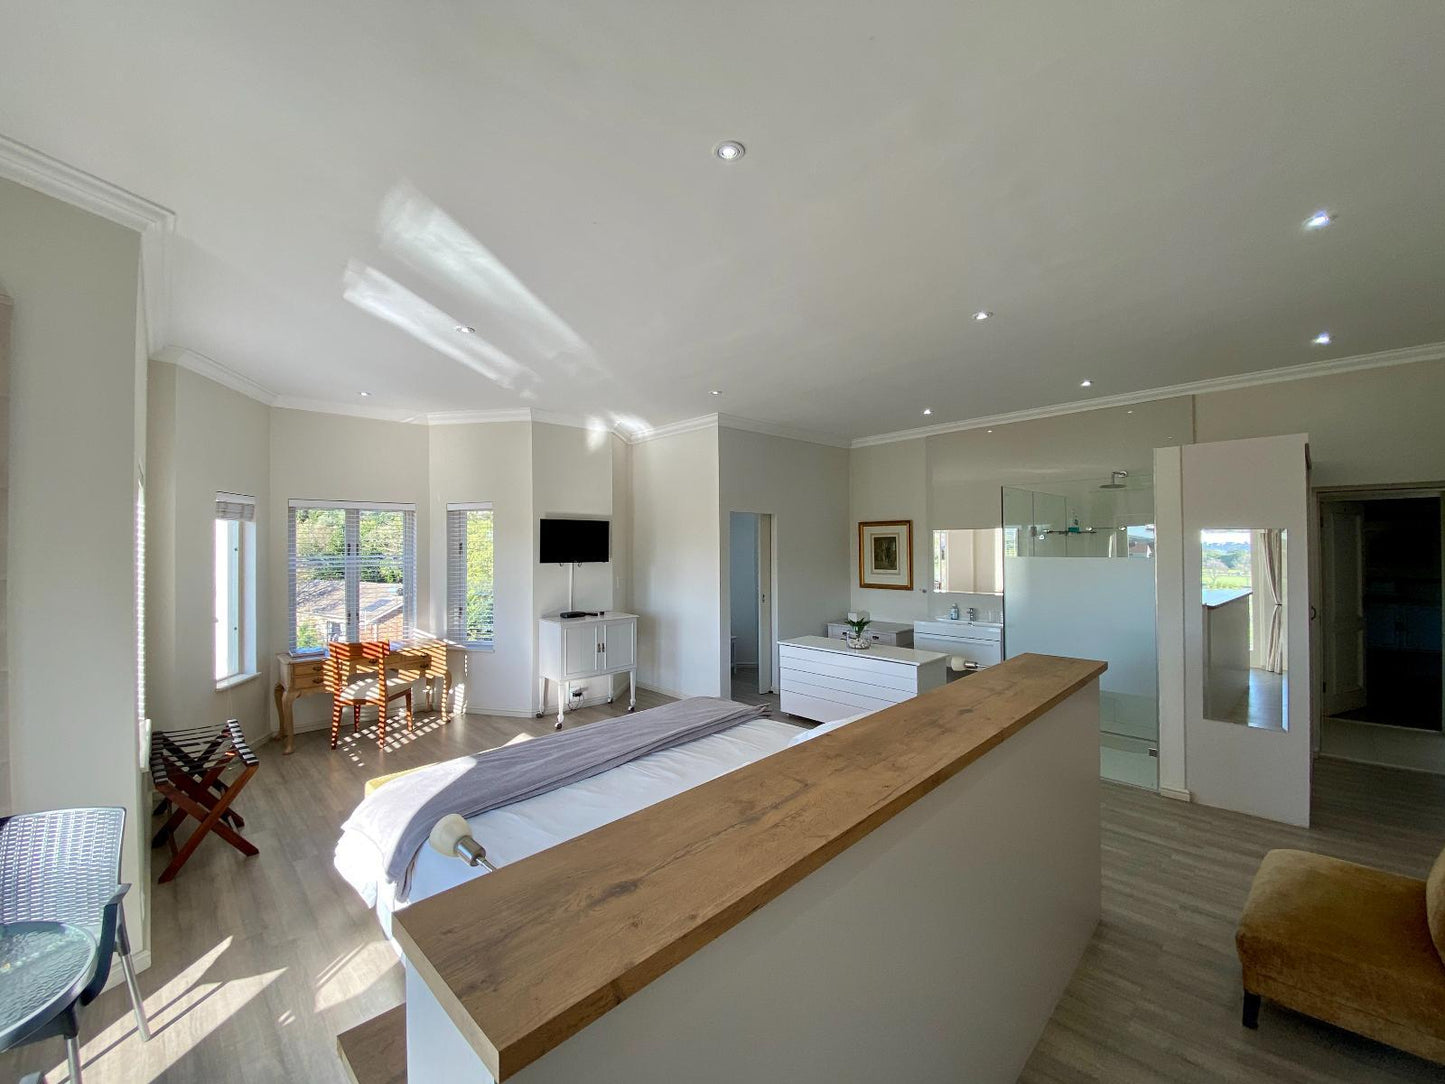 Room 2 - Luxury Double Room Idyllic View @ 4 Piet Retief